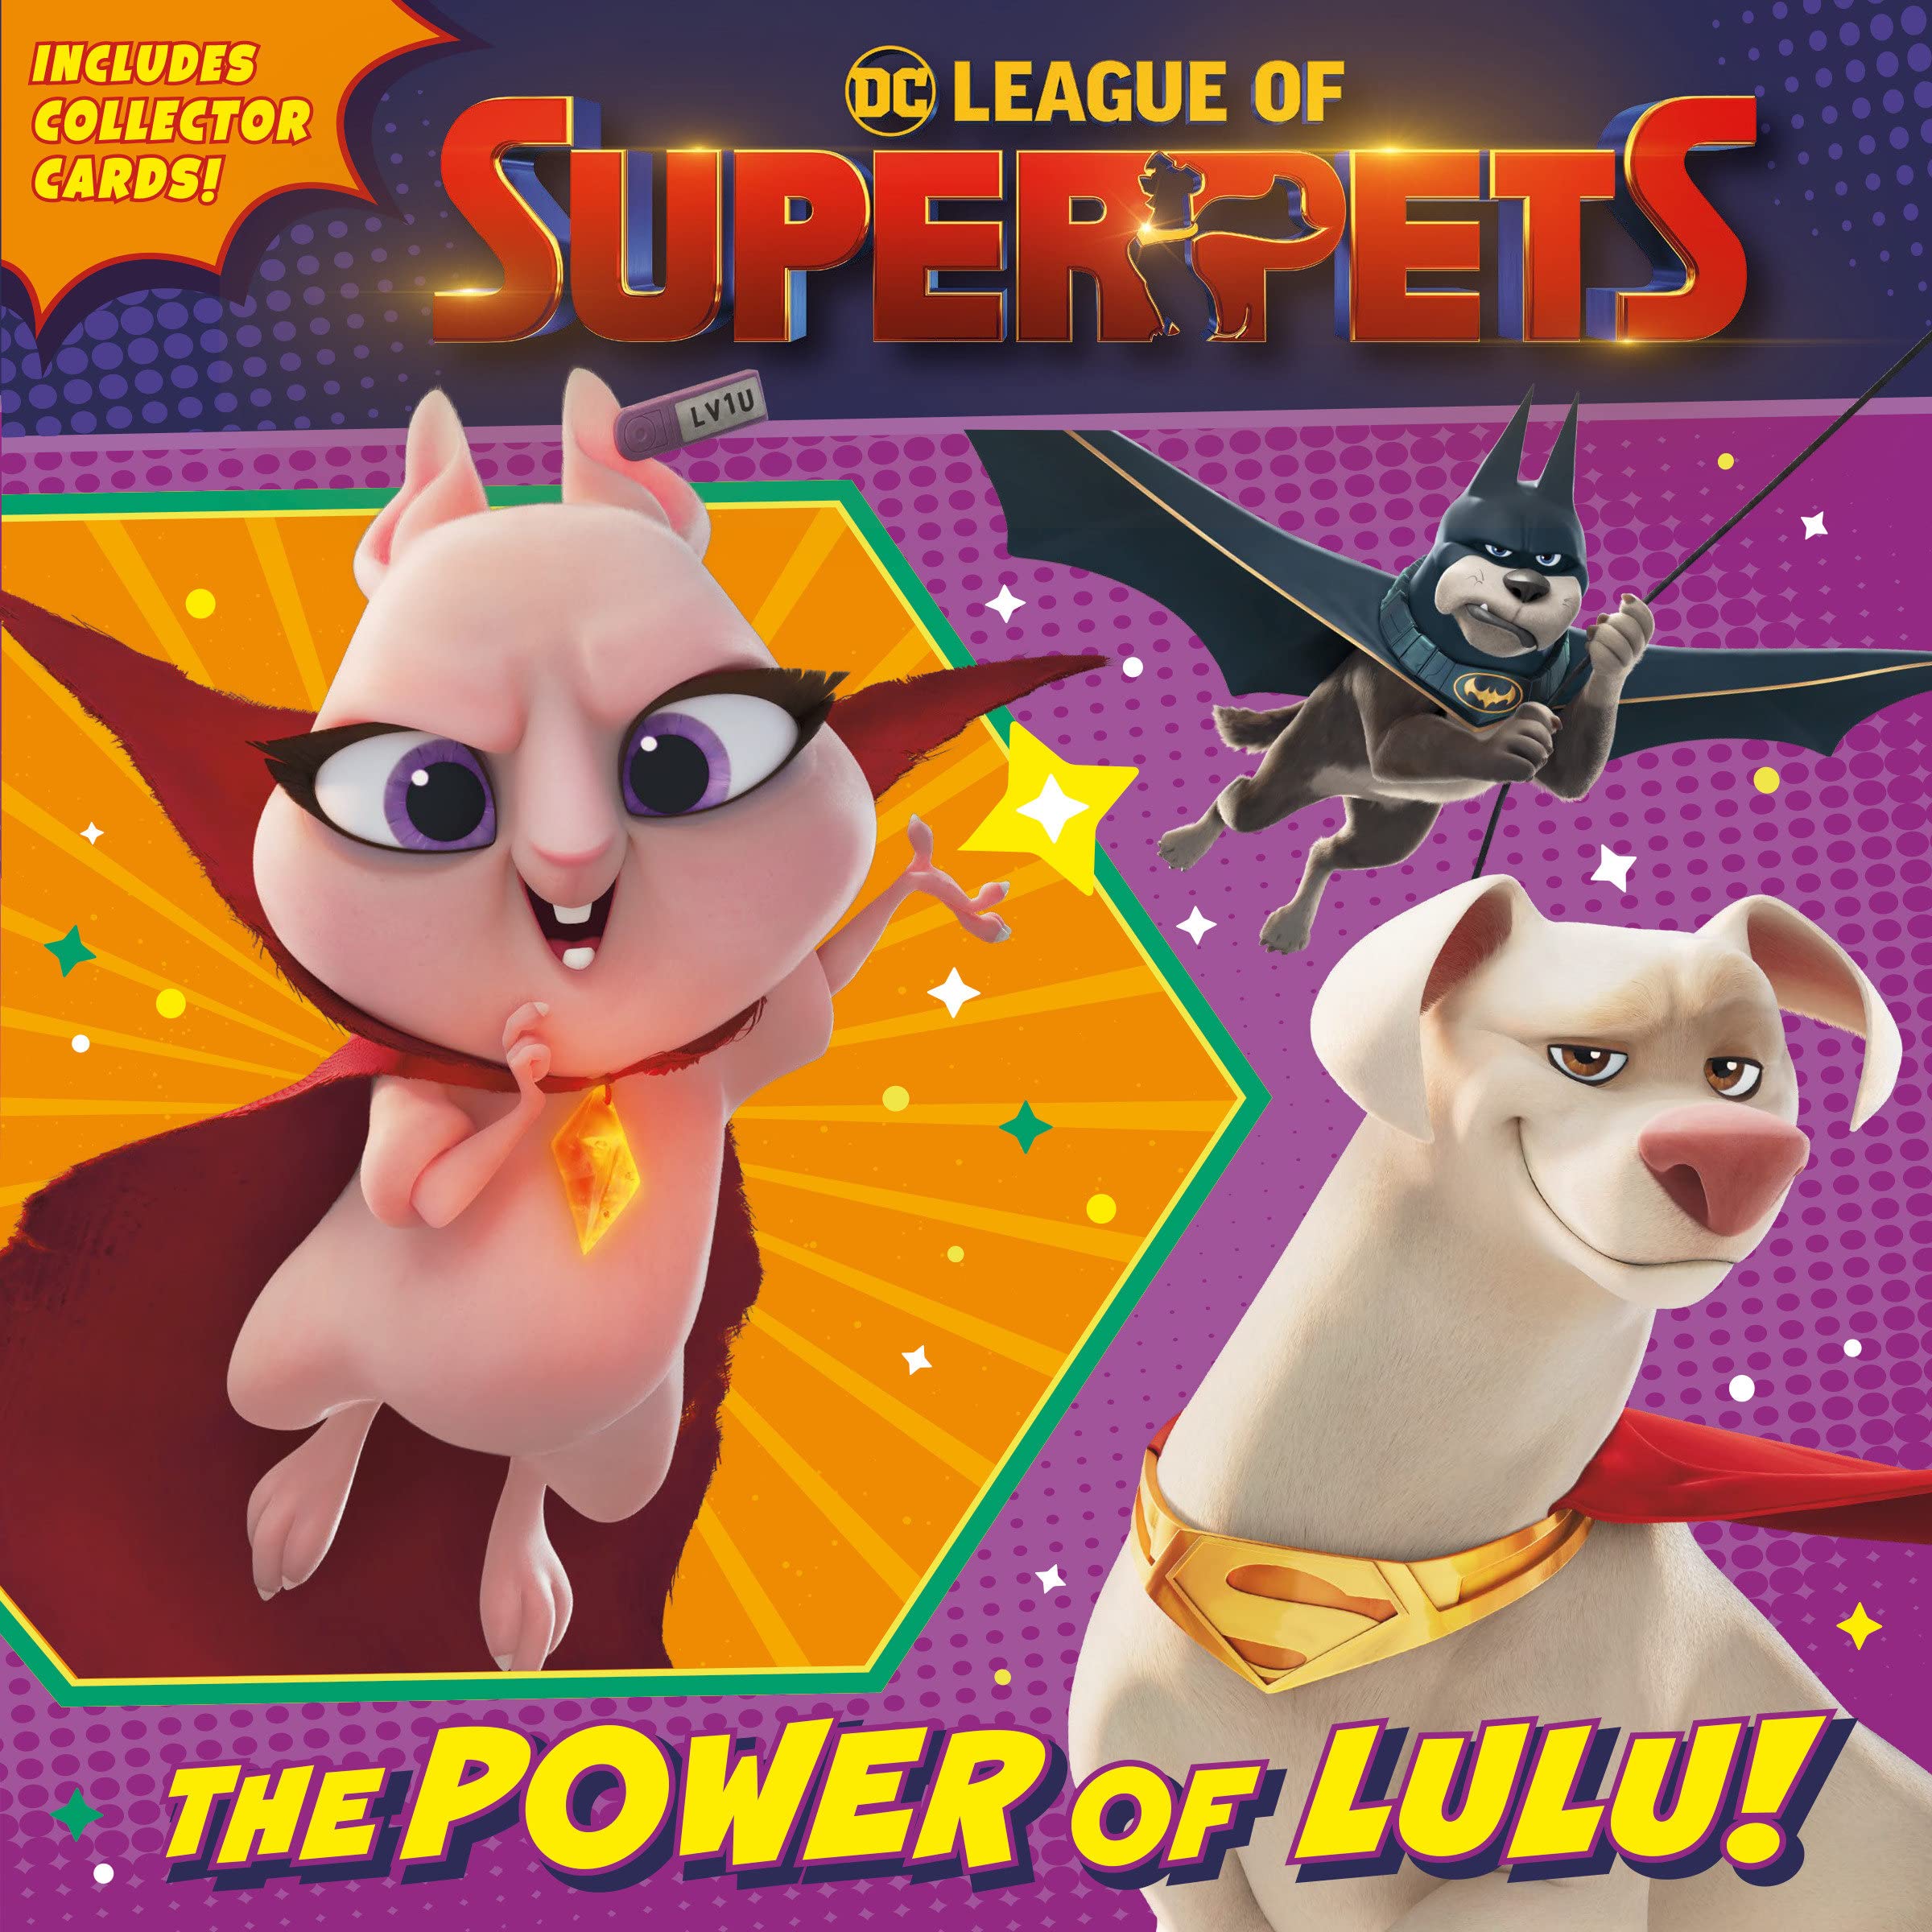 DC League of Super-Pets Picture Book 